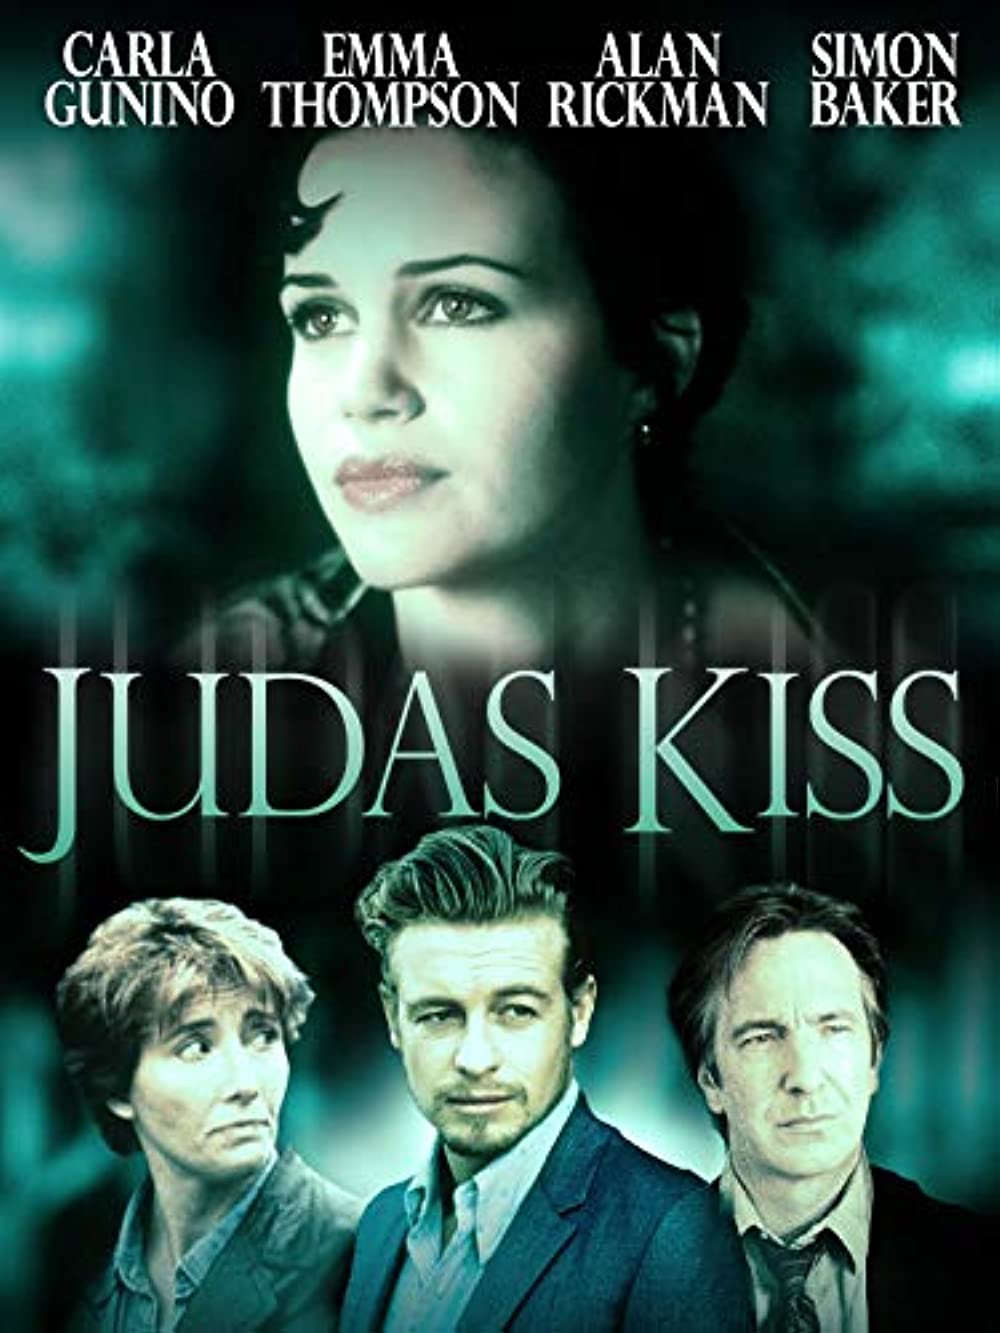 Filmbeschreibung zu Judas Kiss